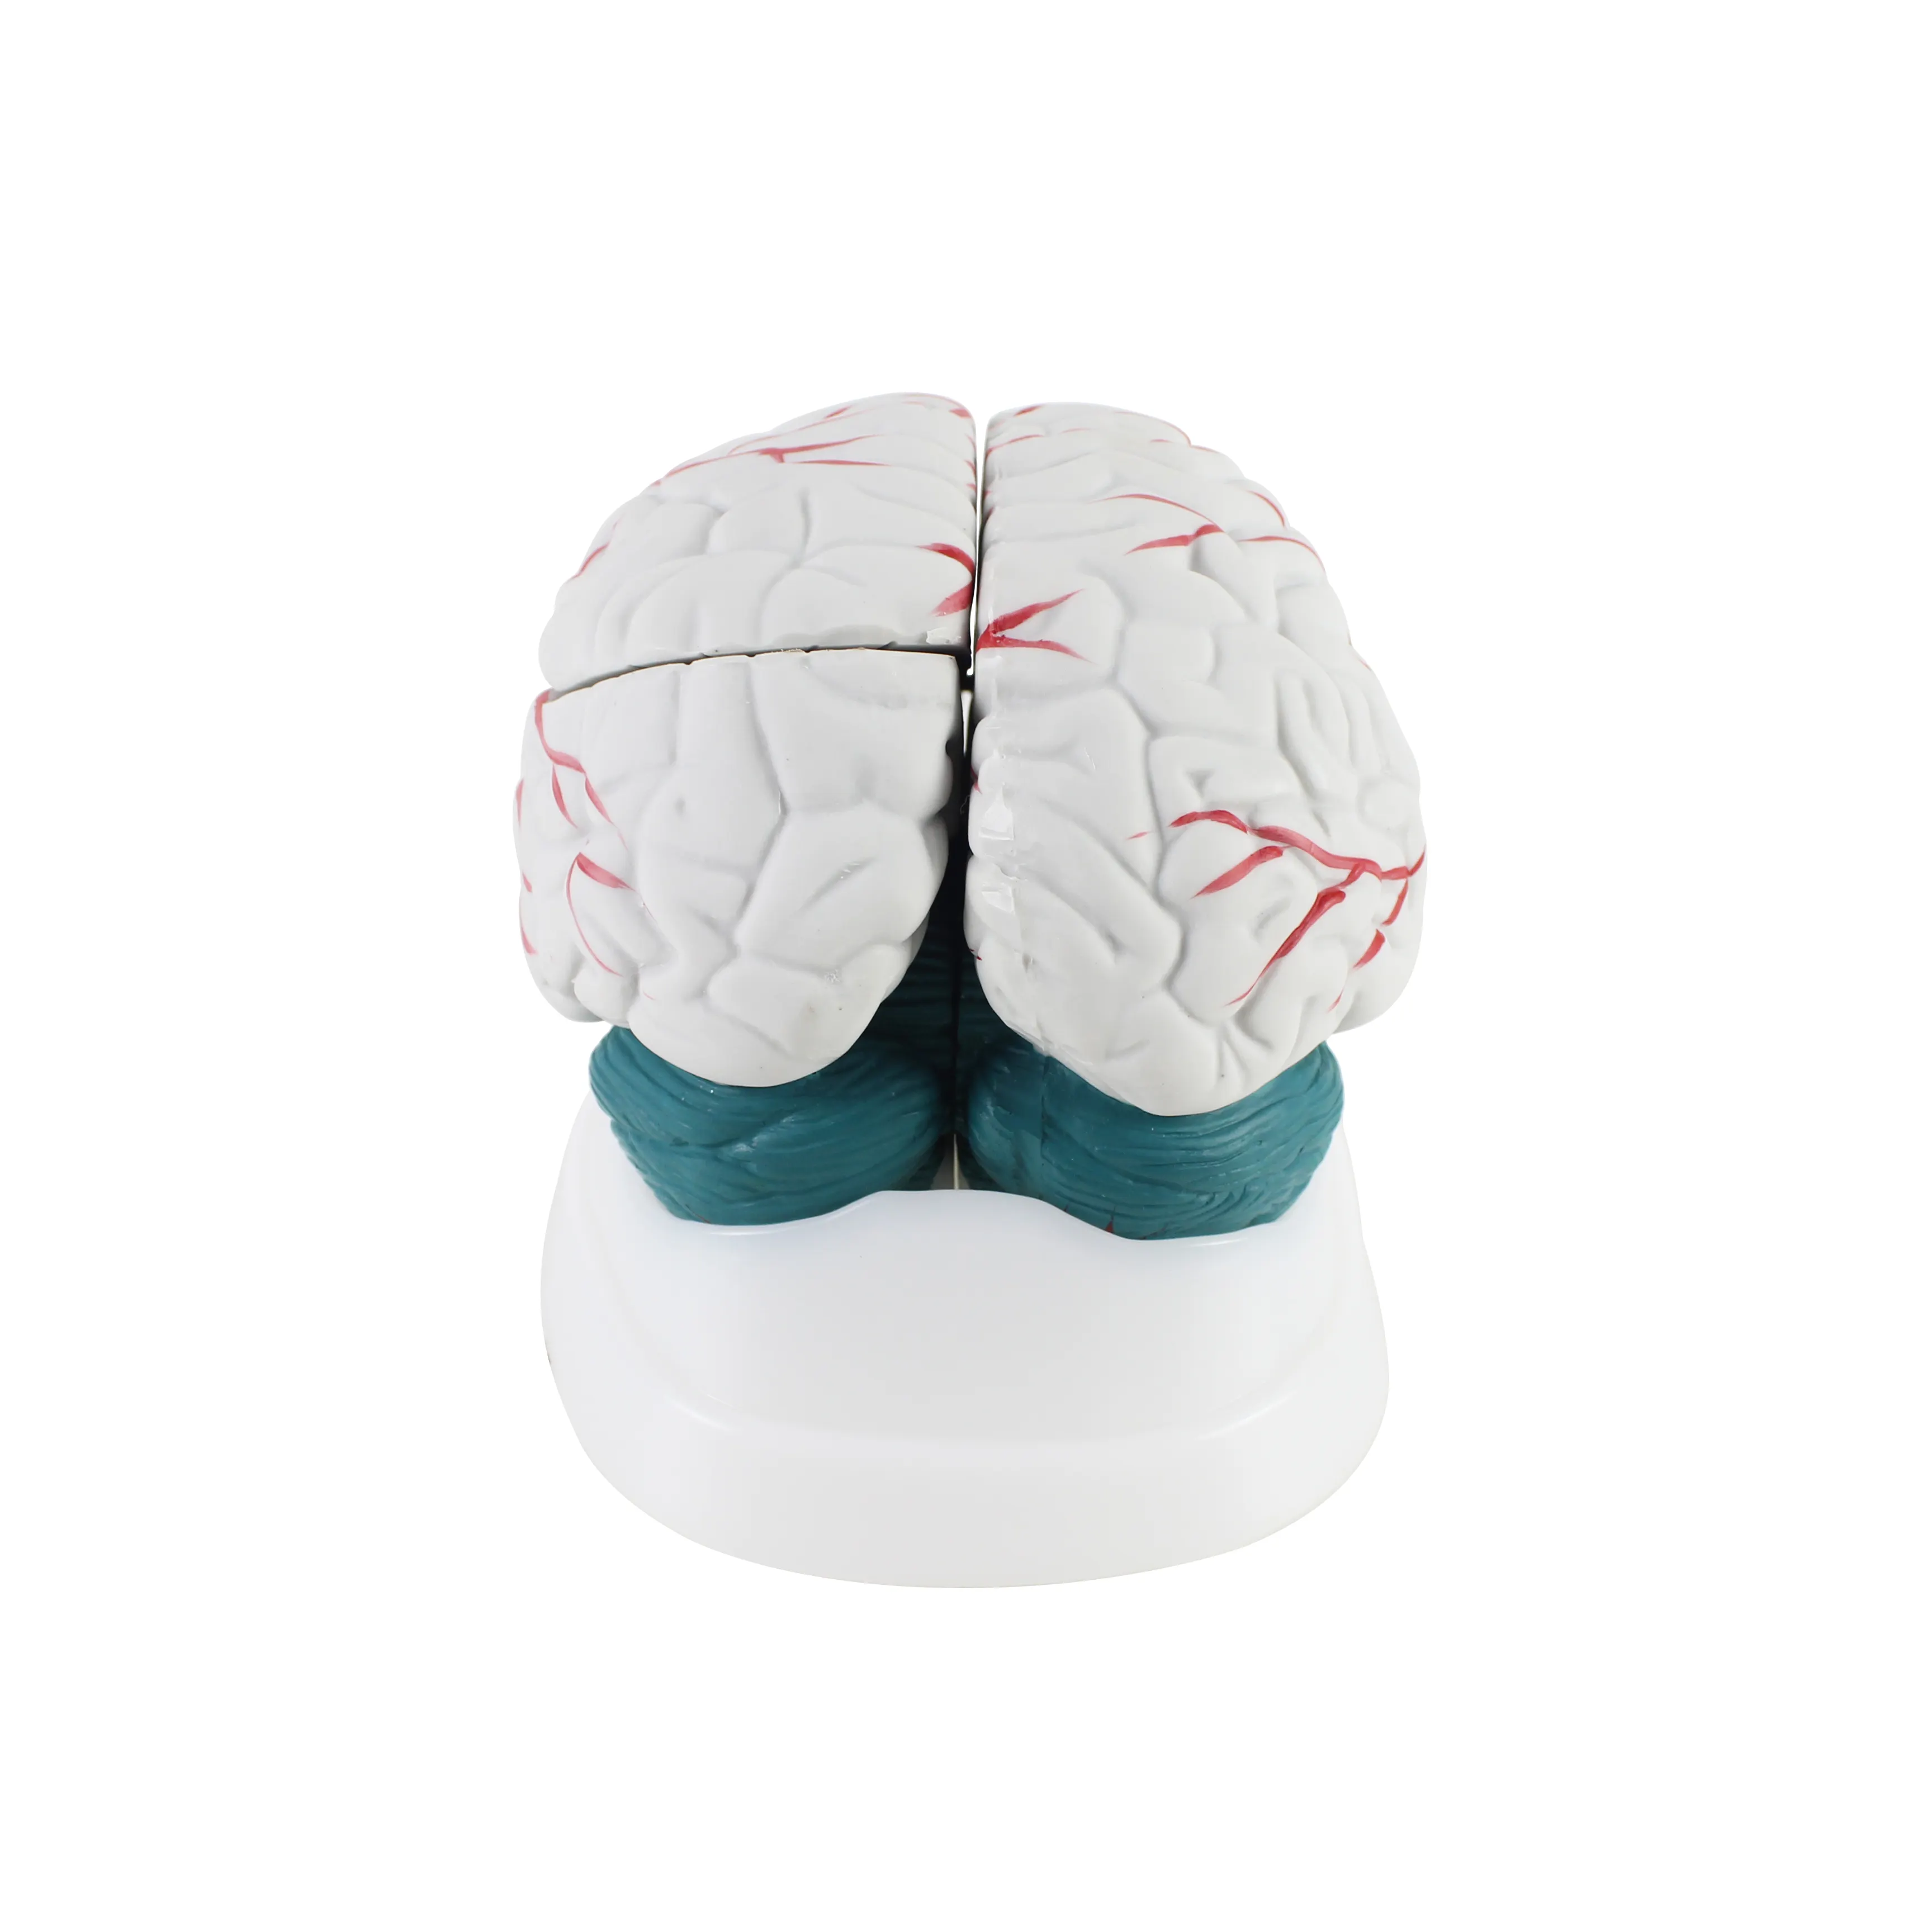 Fábrica alta qualidade e melhor preço novo estilo anatomia do cérebro modelos médicos para ensinar modelo anatômico do cérebro humano